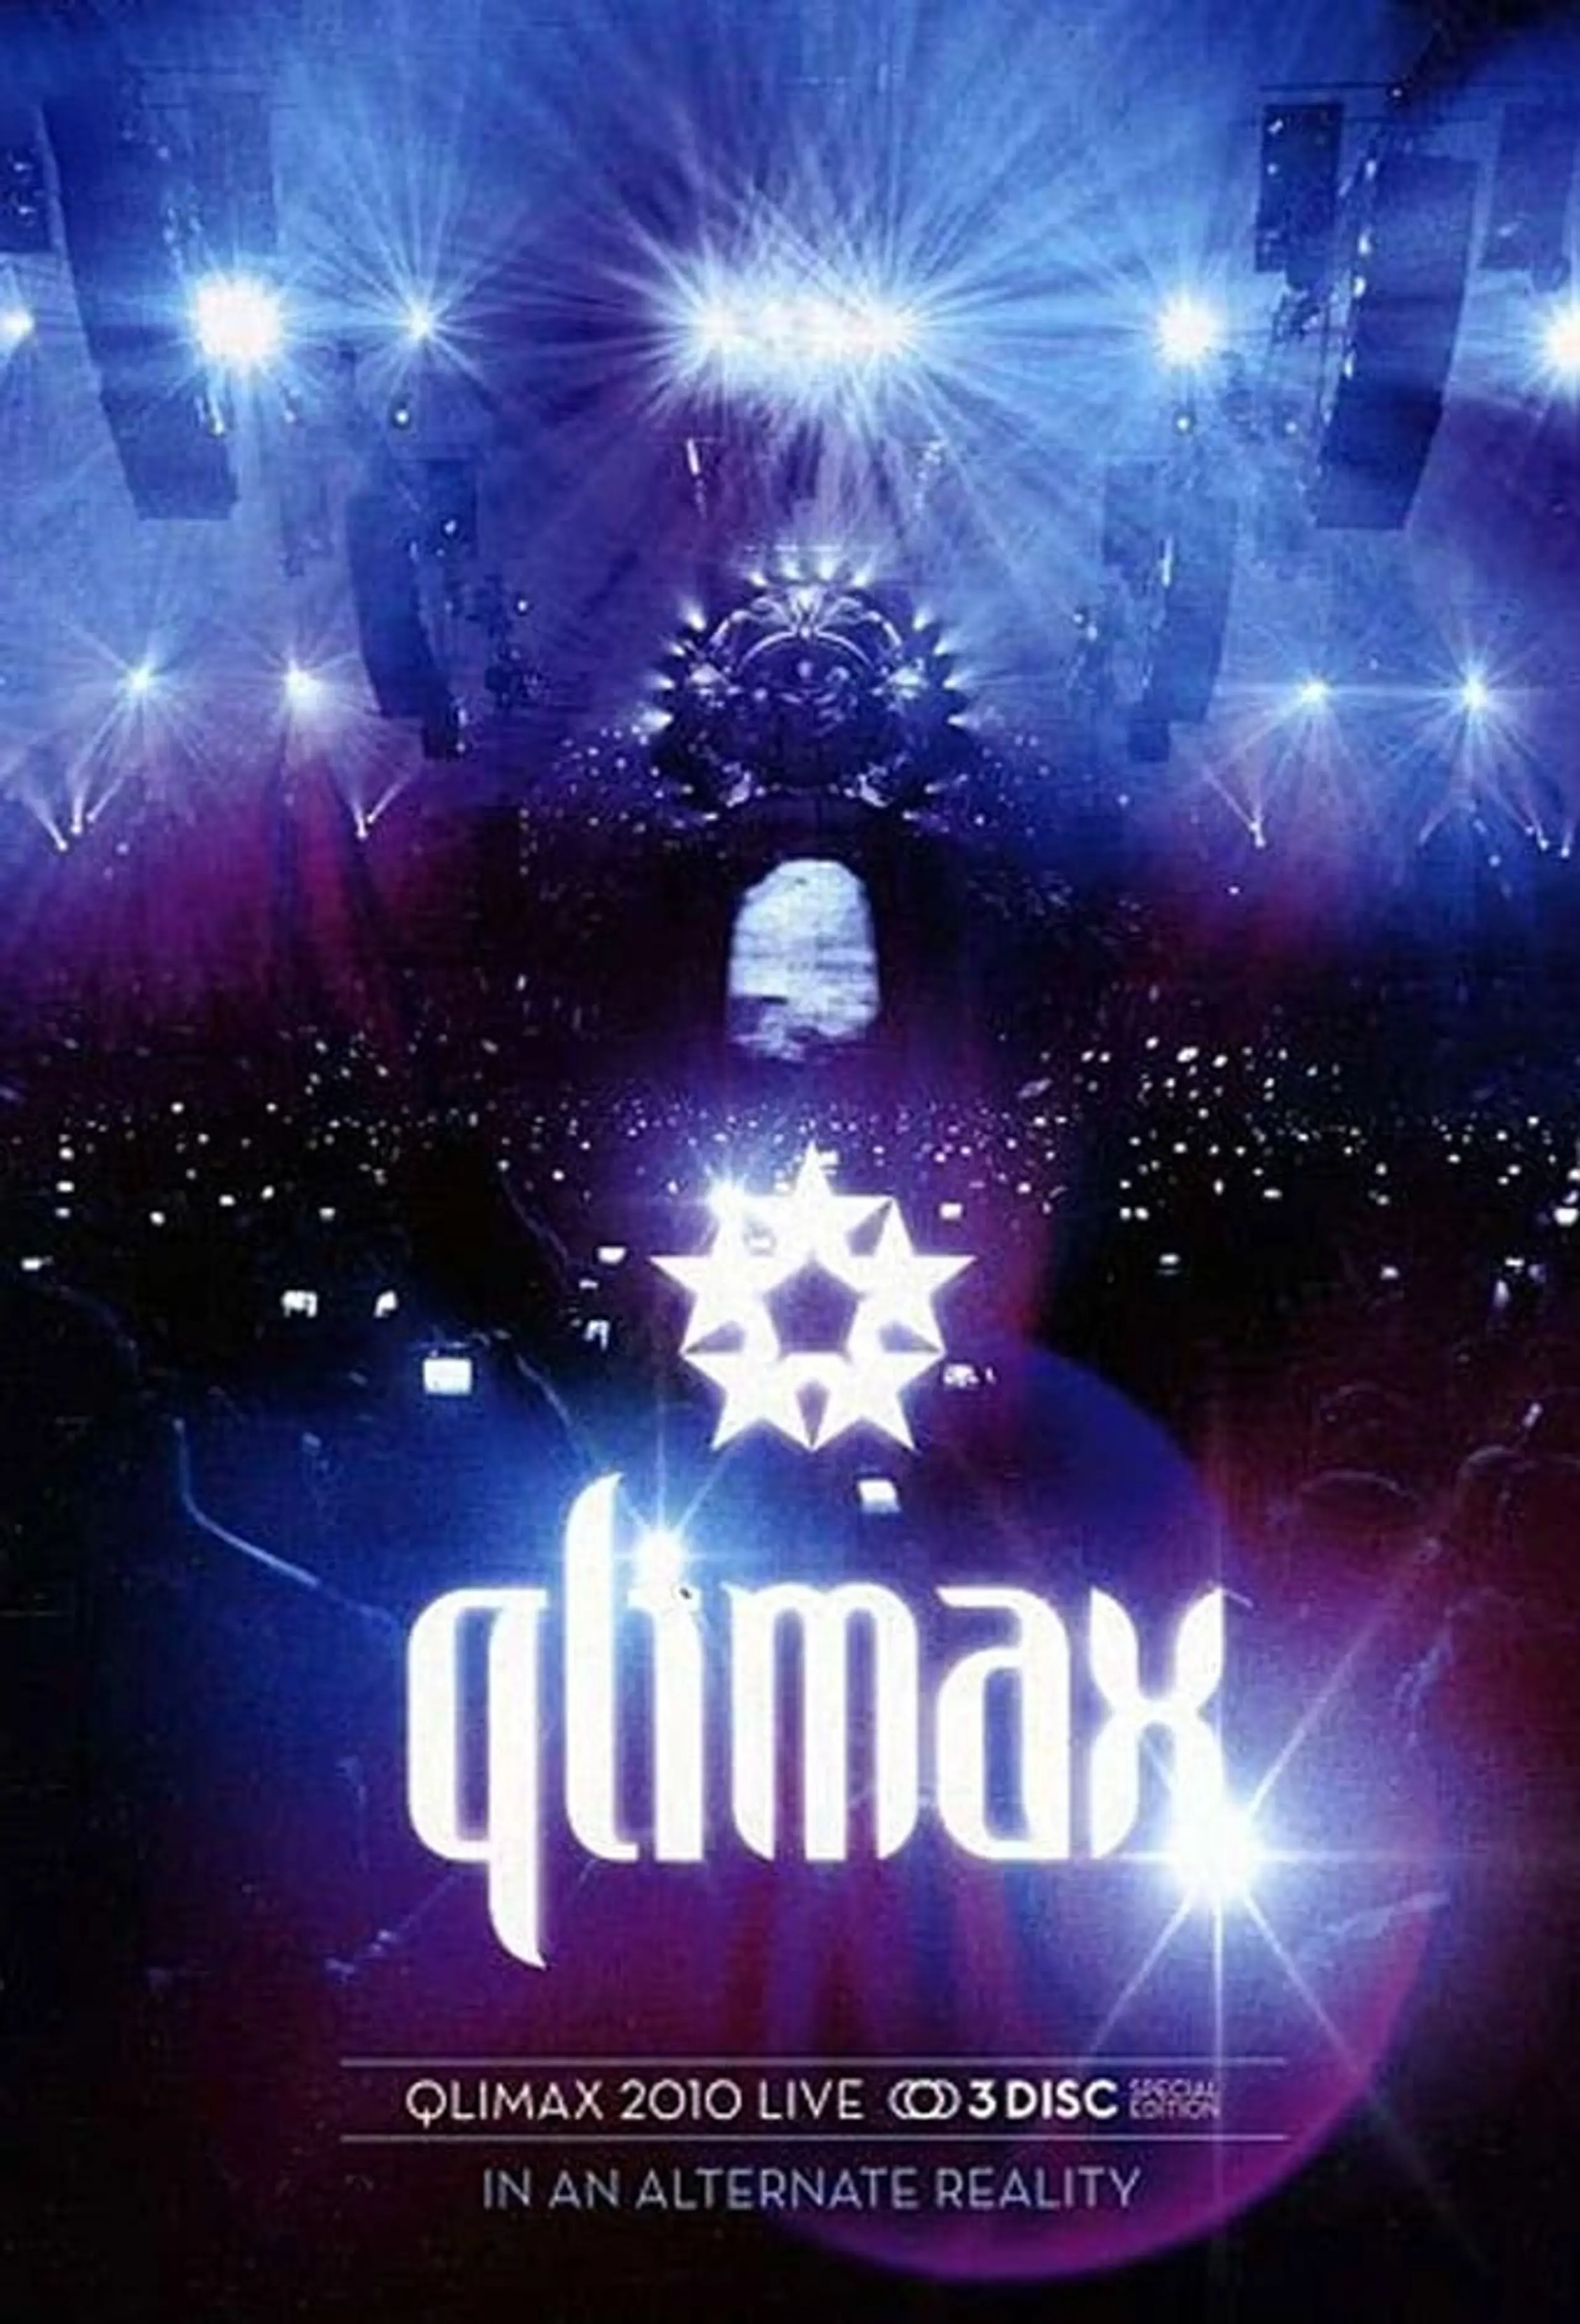 Qlimax 2010